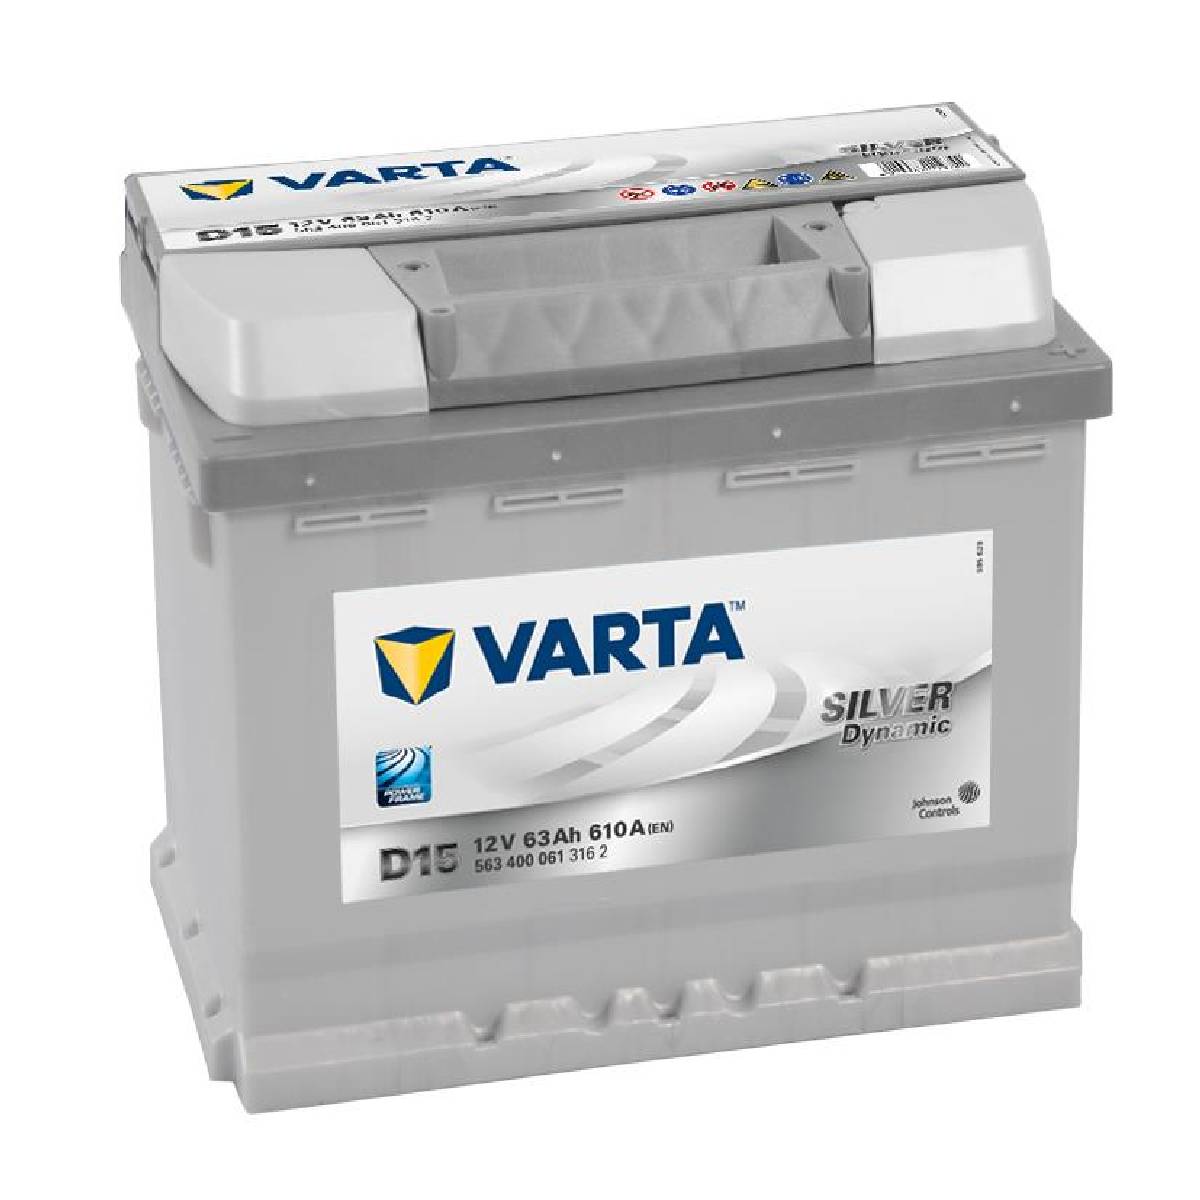 Varta SILVER Dynamic 563 400 061 3162 D15 12Volt 63Ah 610A/EN car battery, Starter batteries, Boots & Marine, Batteries by application